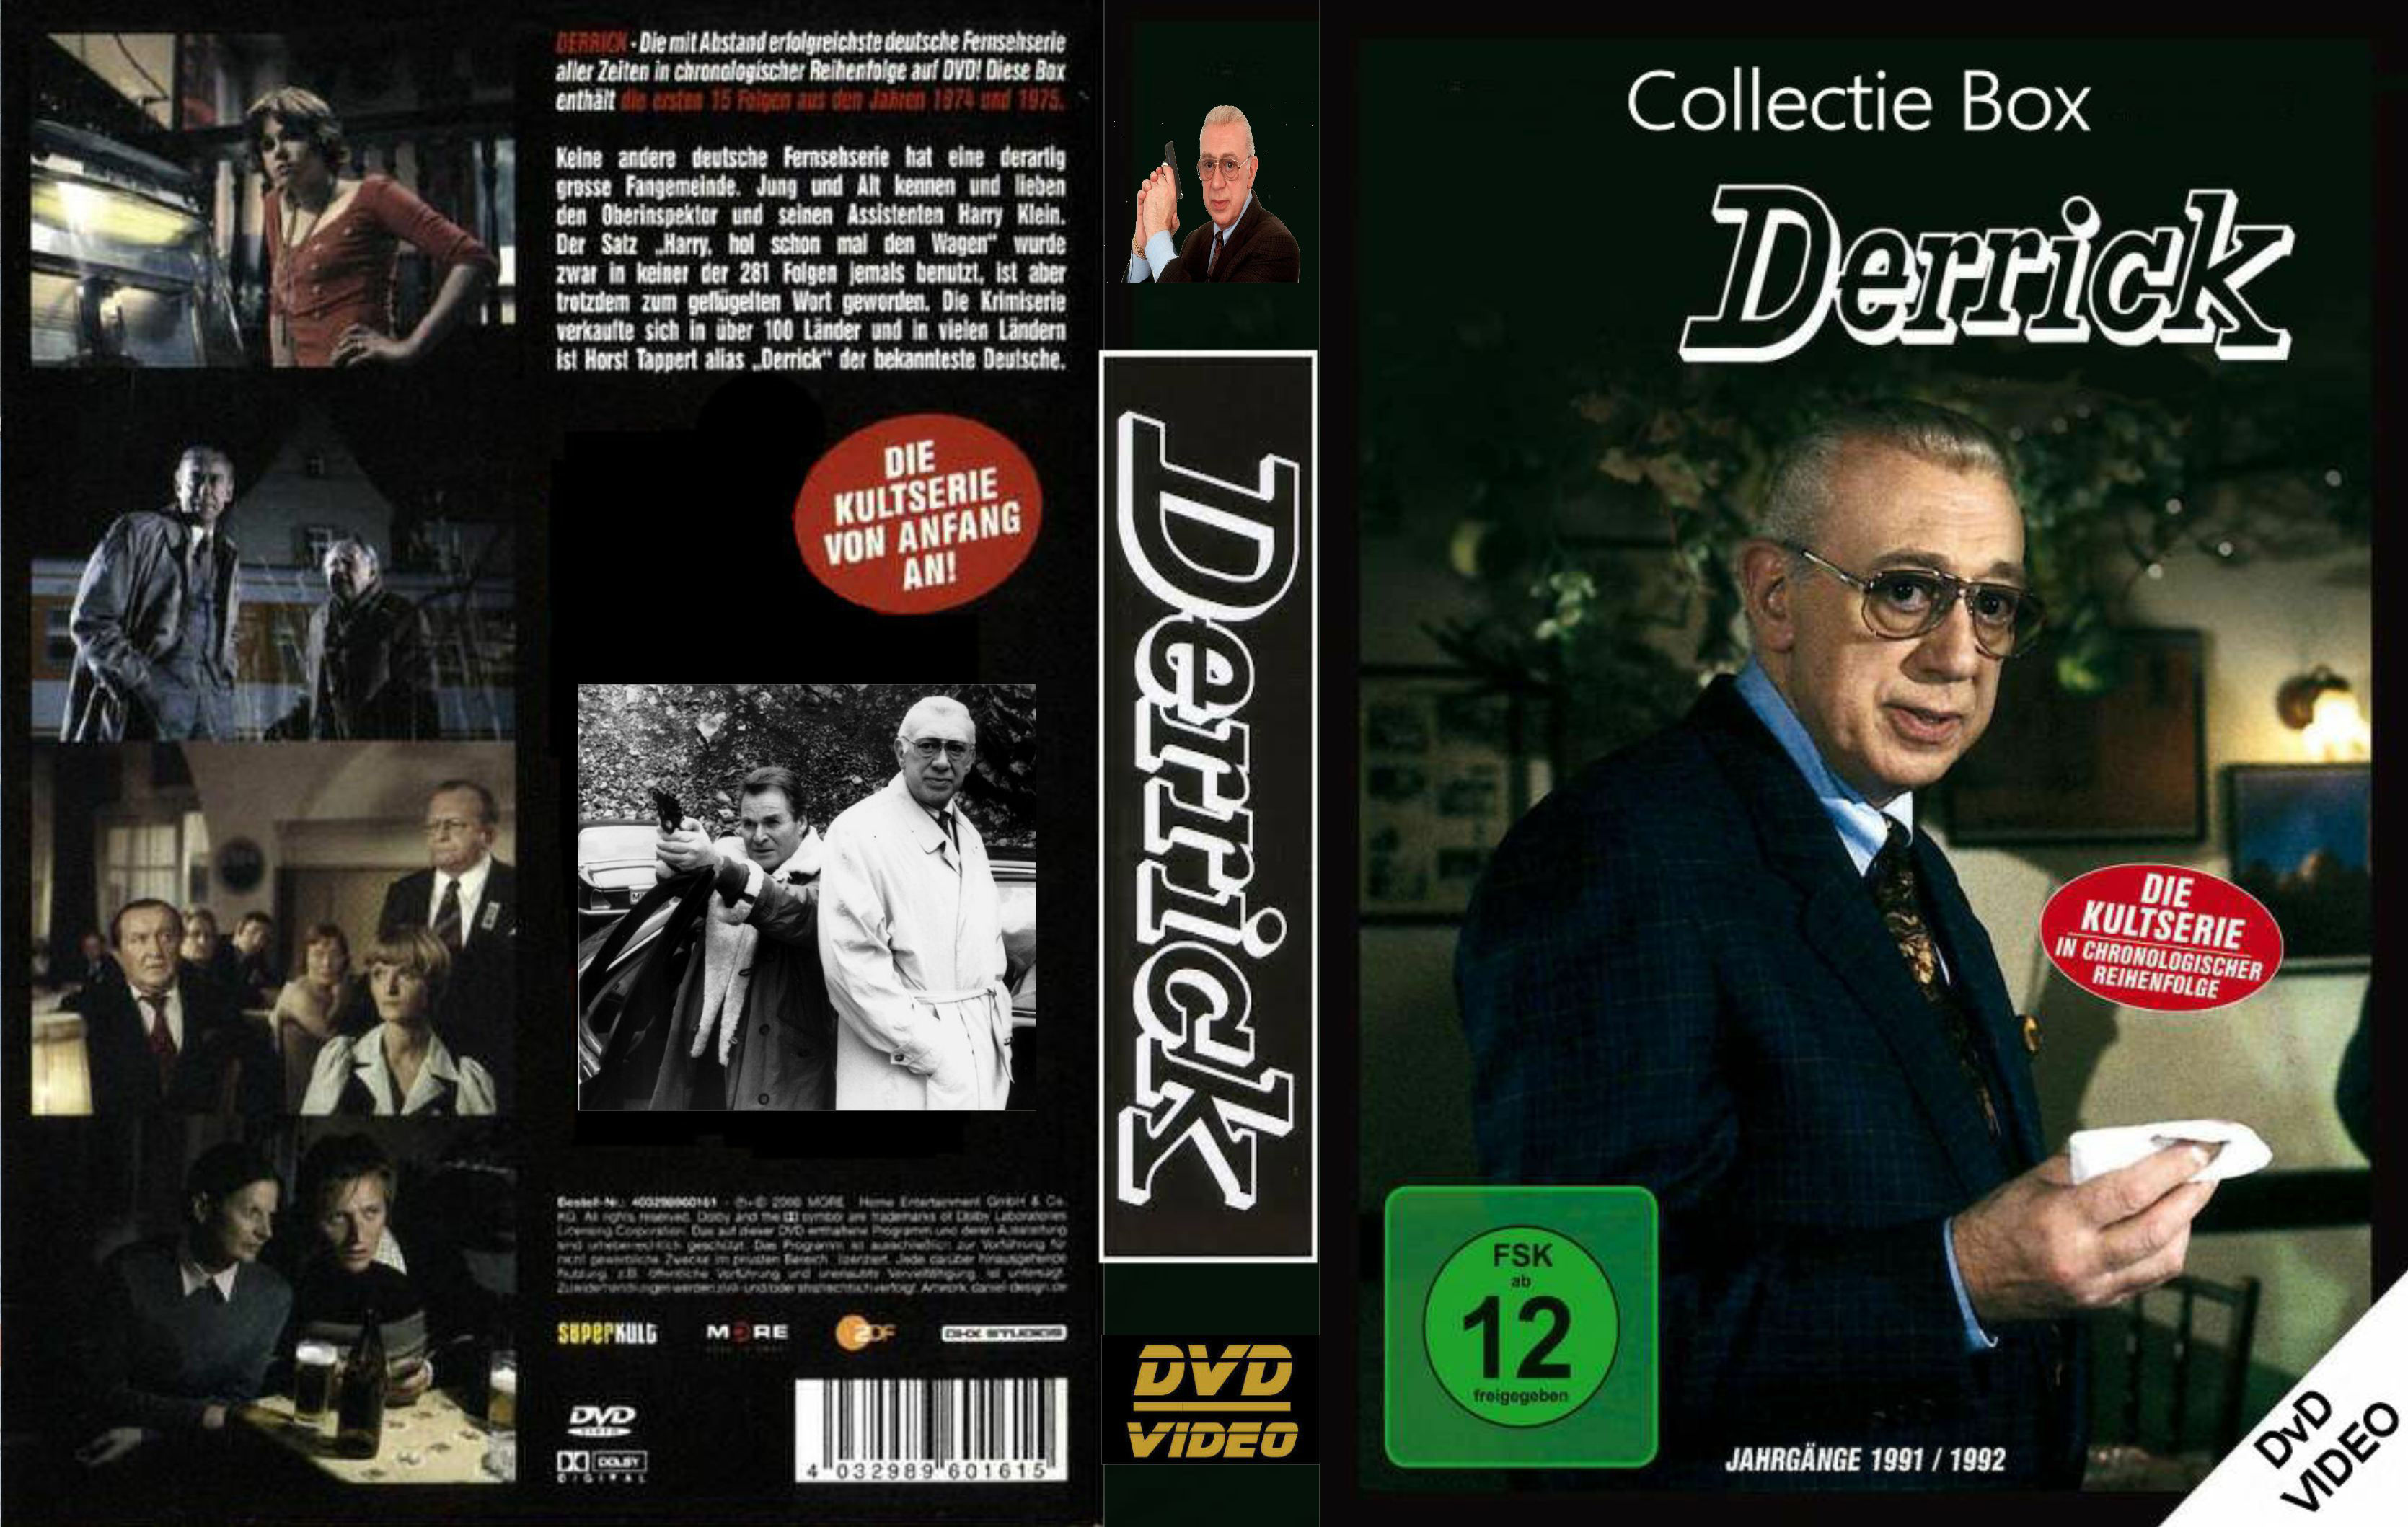 REPOST Derrick Collectie - DvD 3